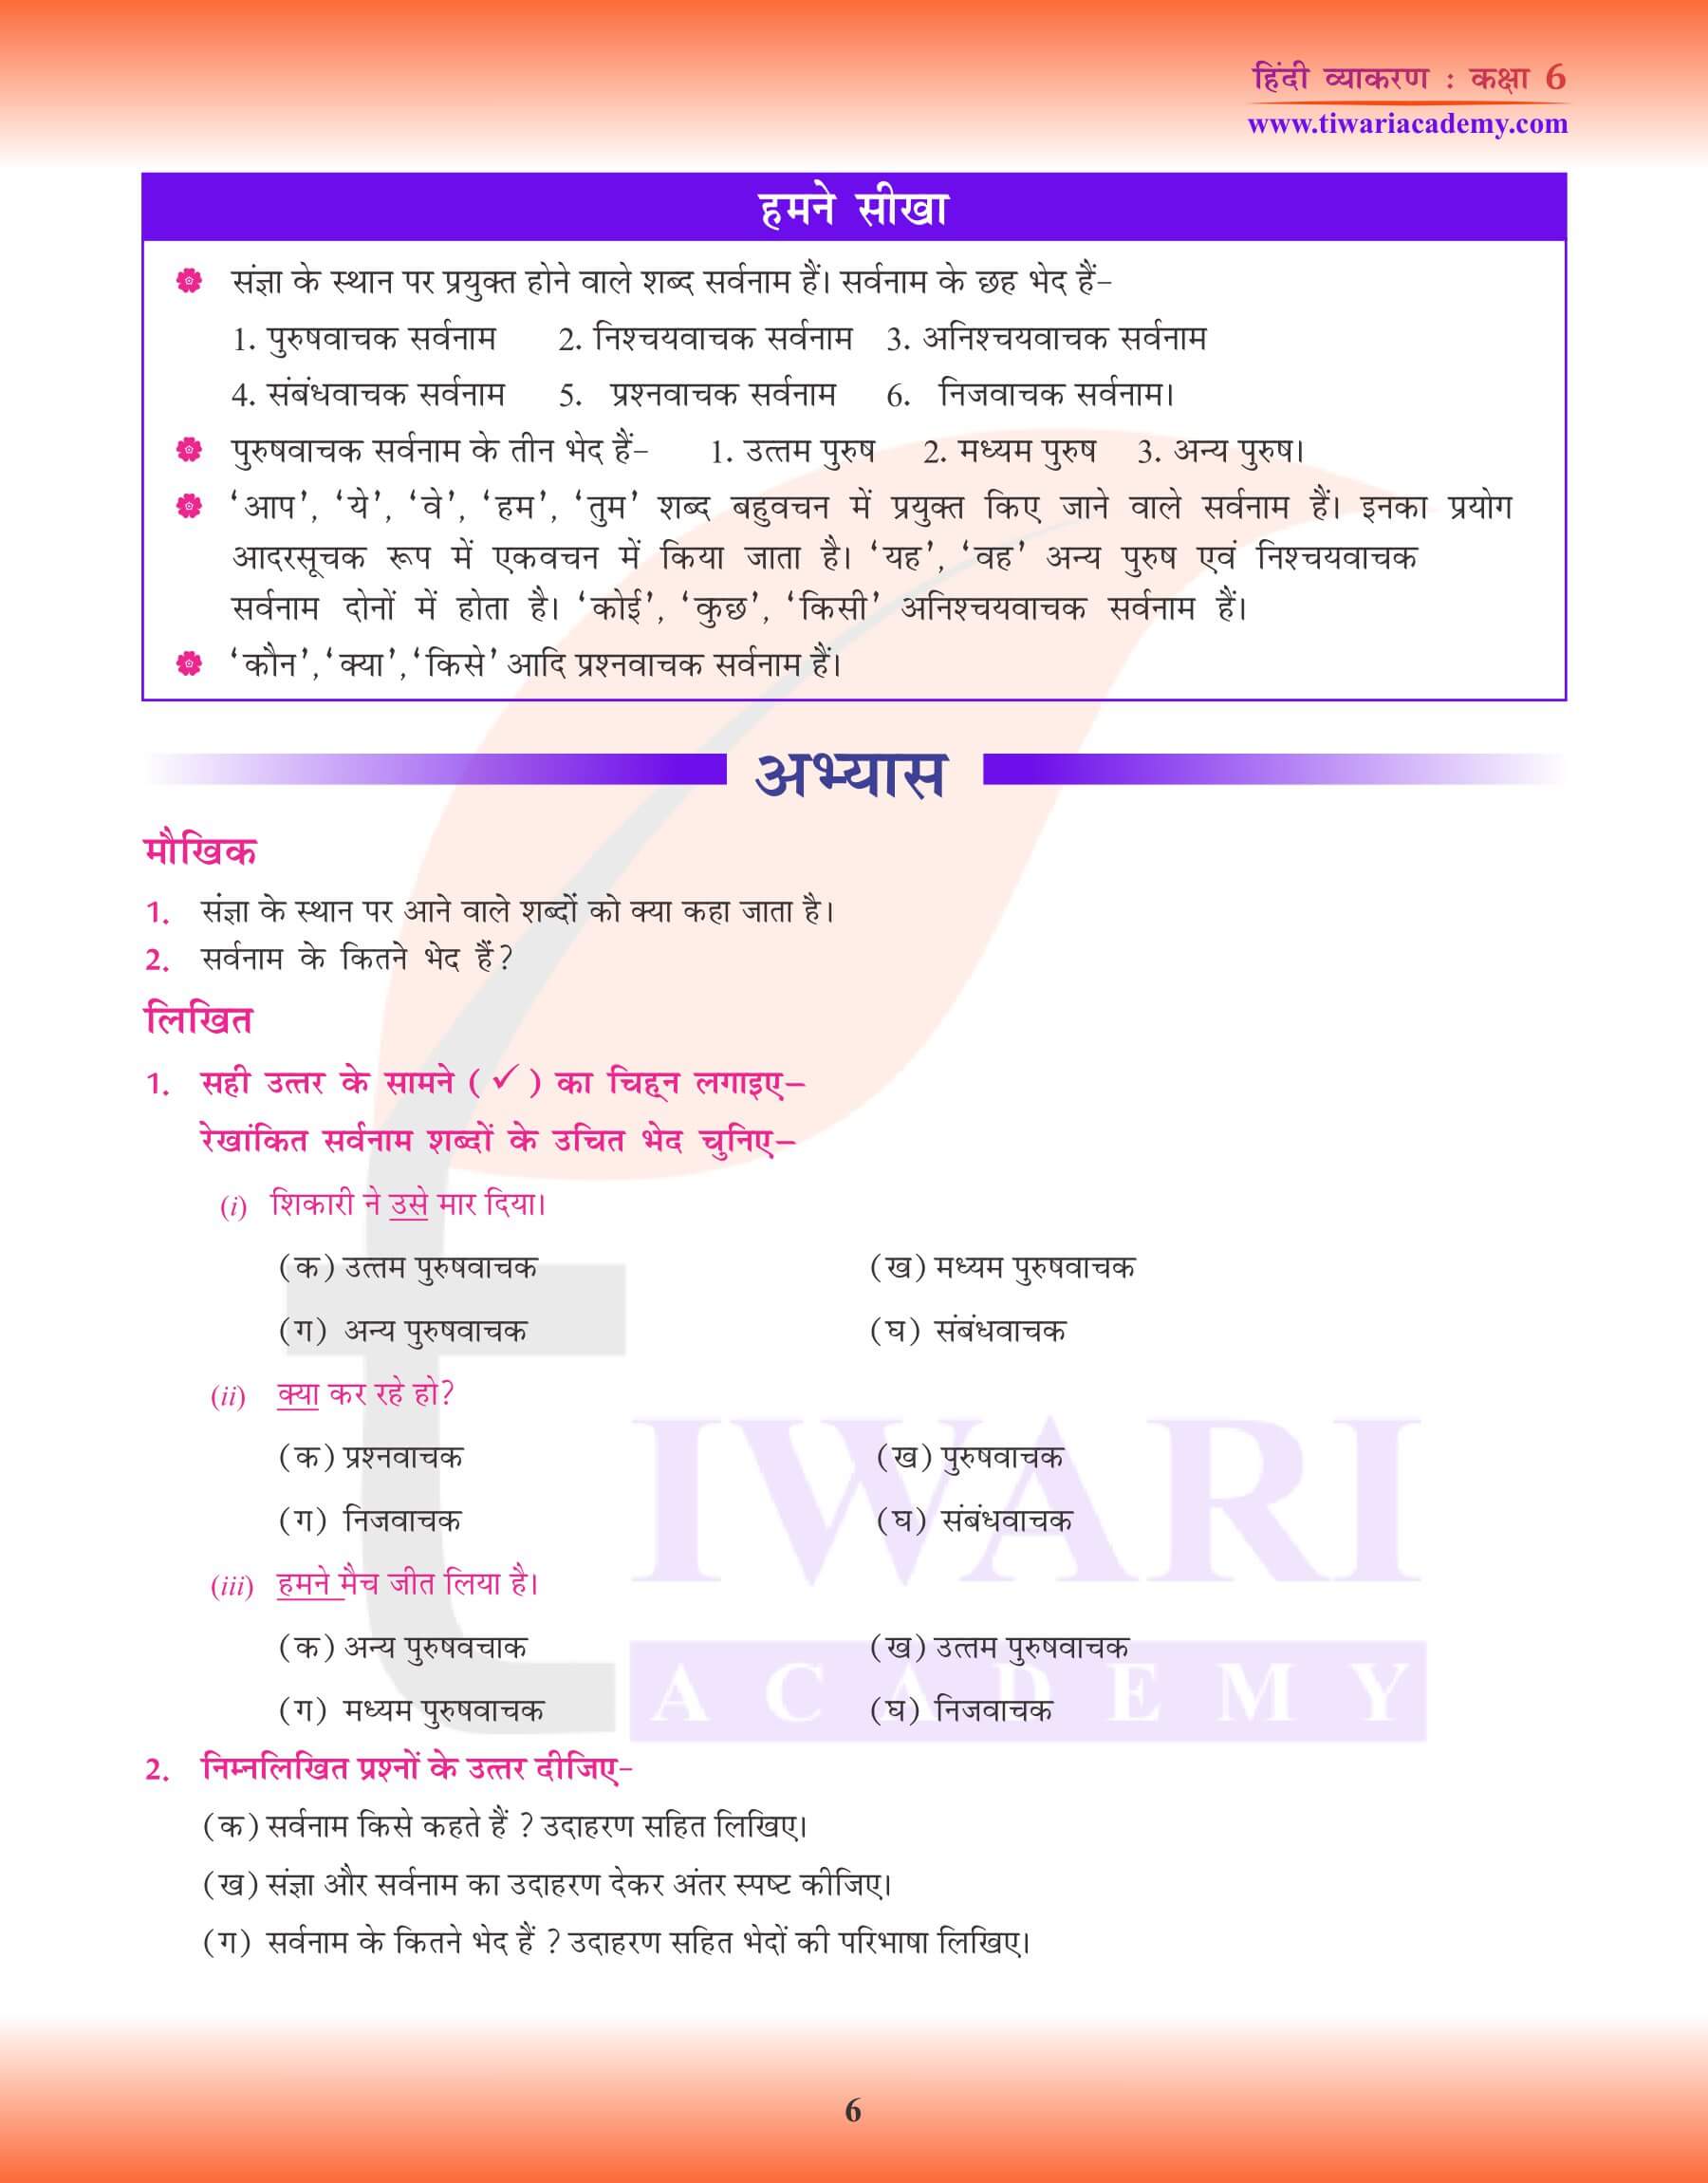 कक्षा 6 हिंदी व्याकरण सर्वनाम के उपयोग